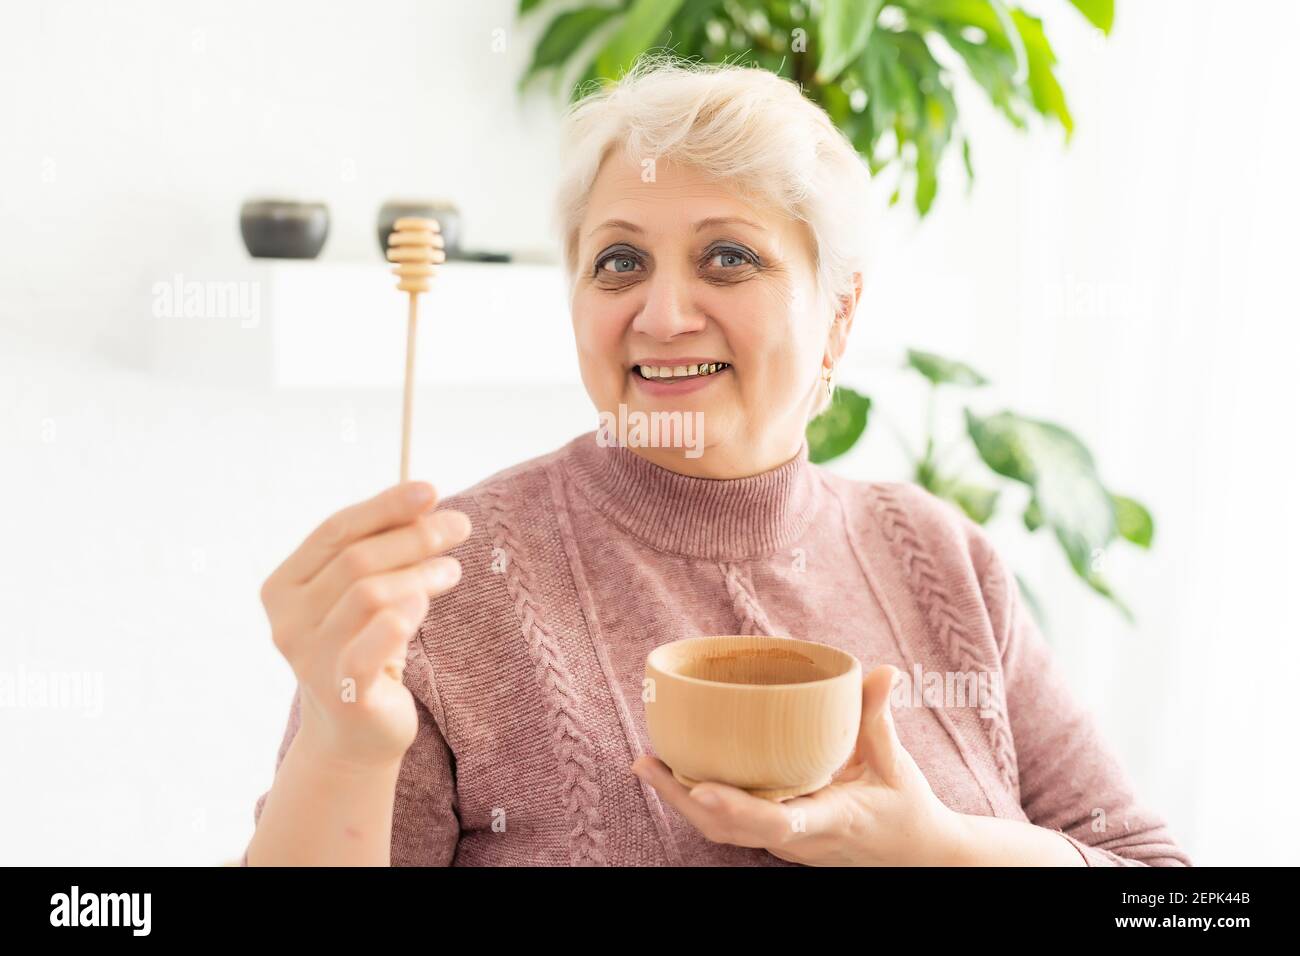 Primo piano ritratto di affascinante donna matura, tenendo il vaso di miele con cucchiaio, guardando la macchina fotografica, isolato su sfondo bianco. Foto Stock